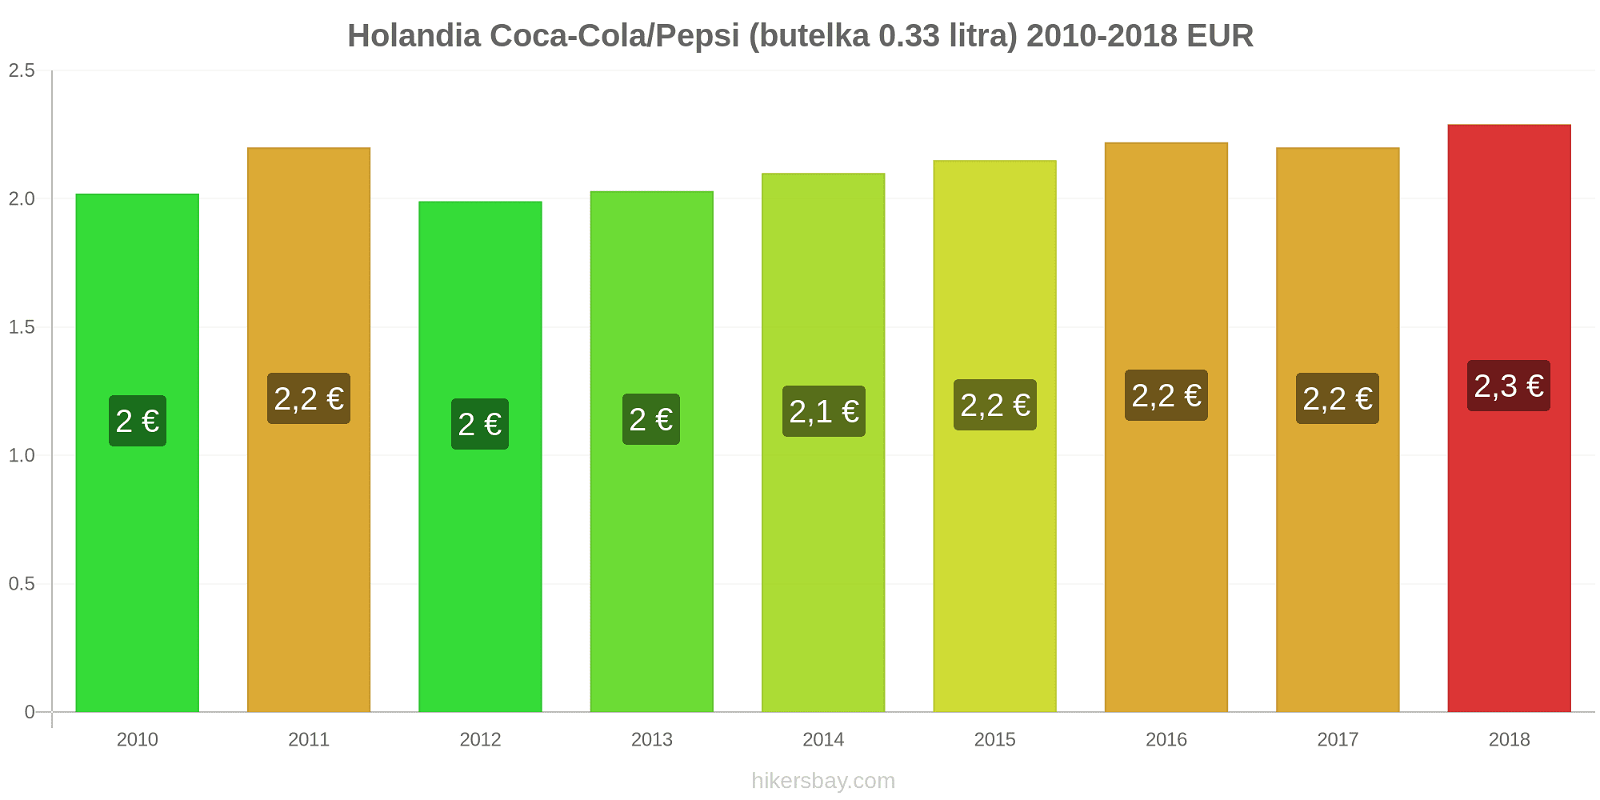 Holandia zmiany cen Coca-Cola/Pepsi (butelka 0.33 litra) hikersbay.com